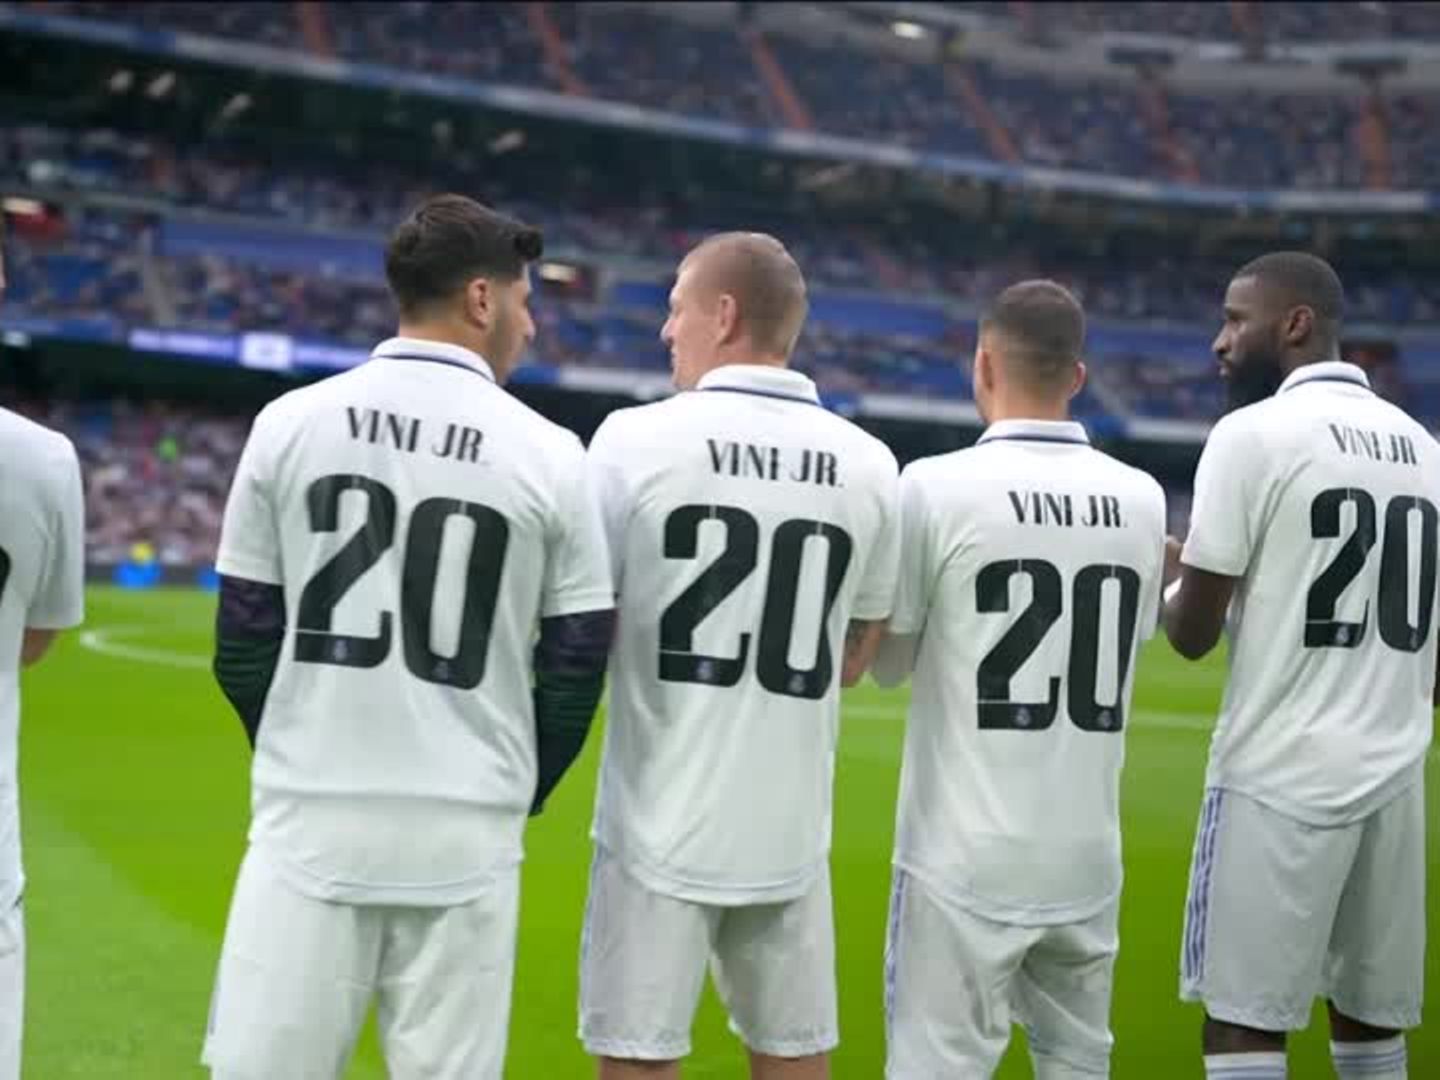 Video La Liga Real im Kampf gegen Rassismus STERN.de